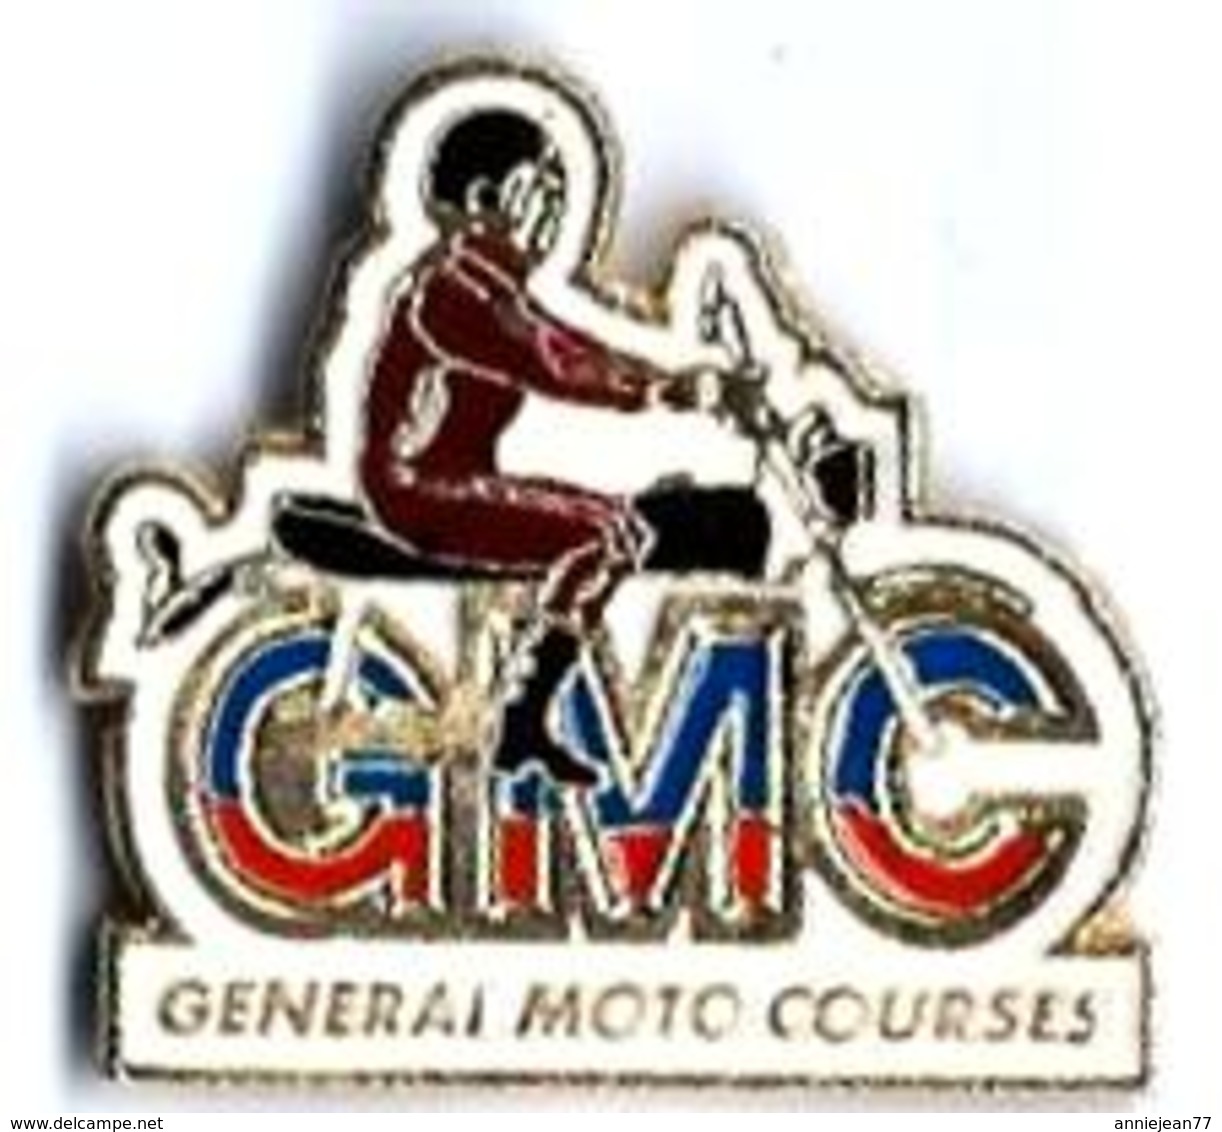 MOTOS - M2 - GMC - GENERAL MOTO COURSES - Verso : SUPPE - Motos